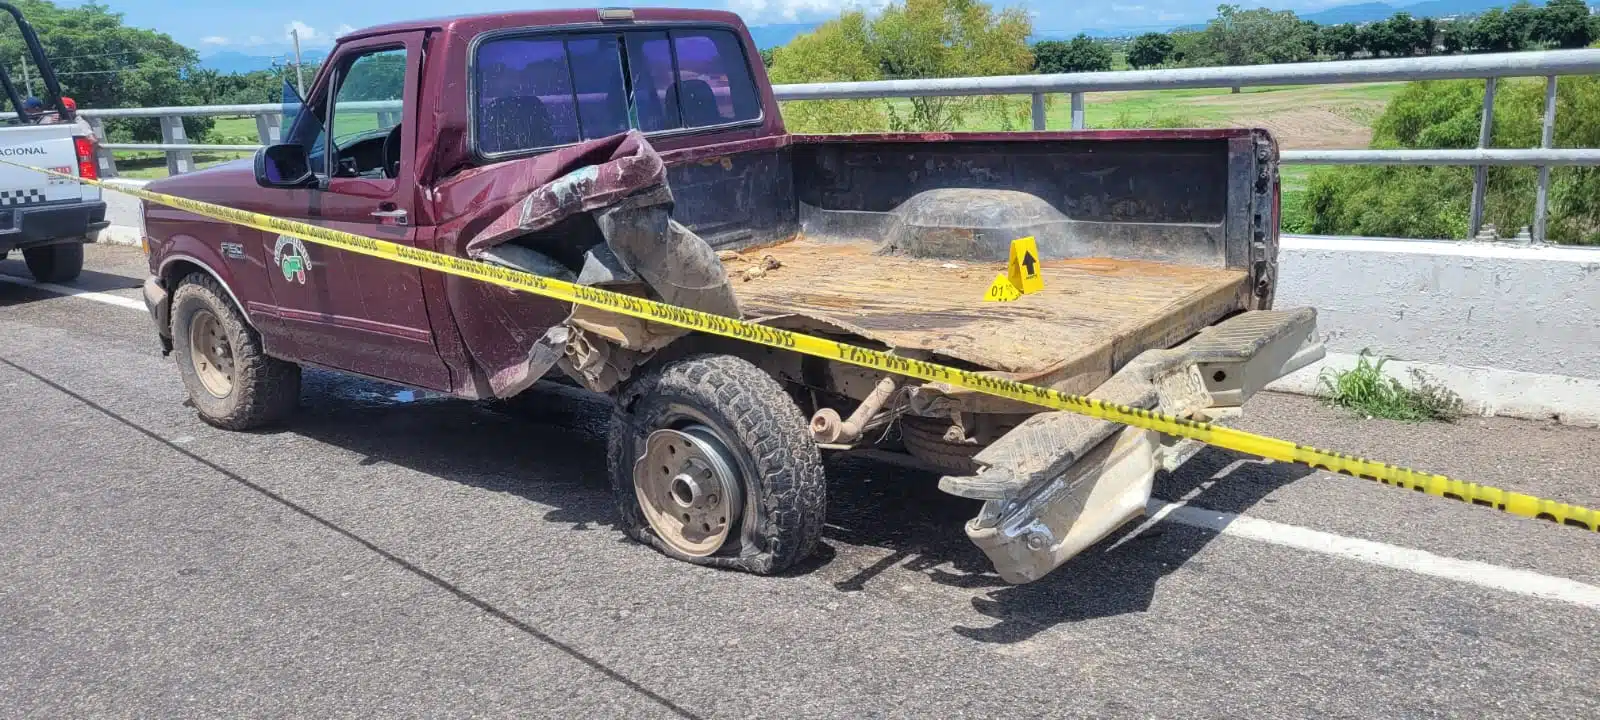 La víctima iba sentada en la caja de esta camioneta cuando ocurrió el accidente.